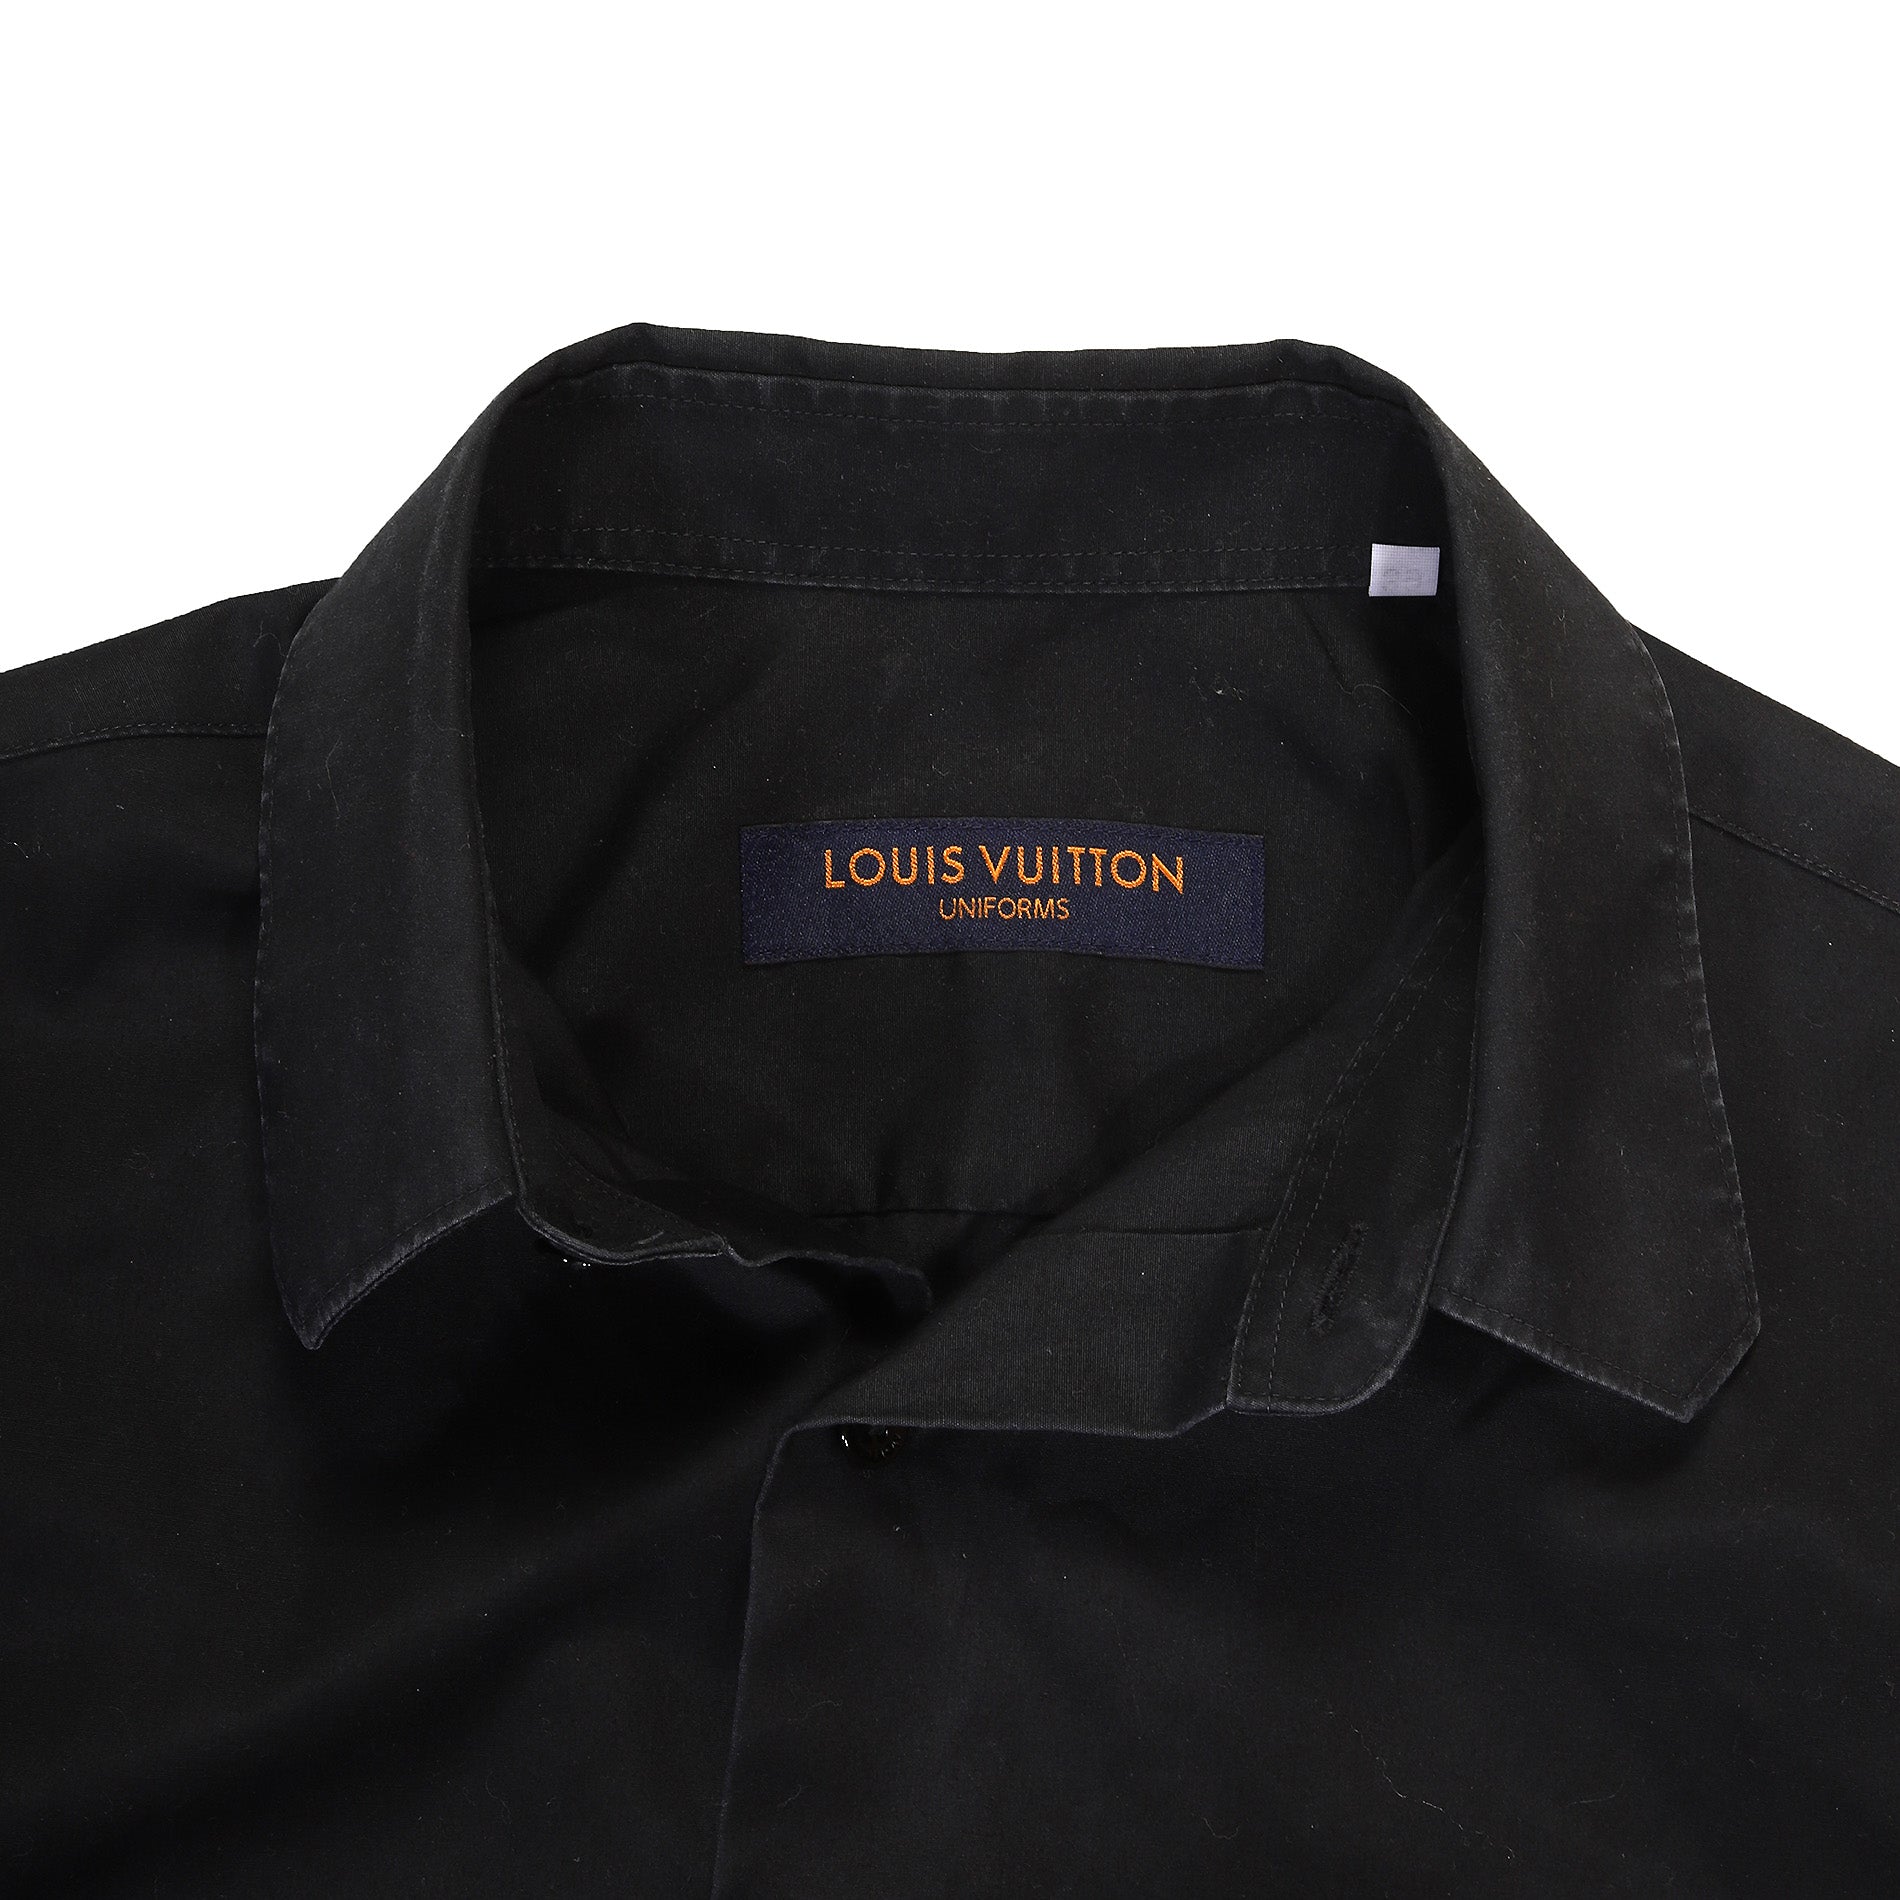 Louis Vuitton, Tops, Louis Vuitton Uniform Top